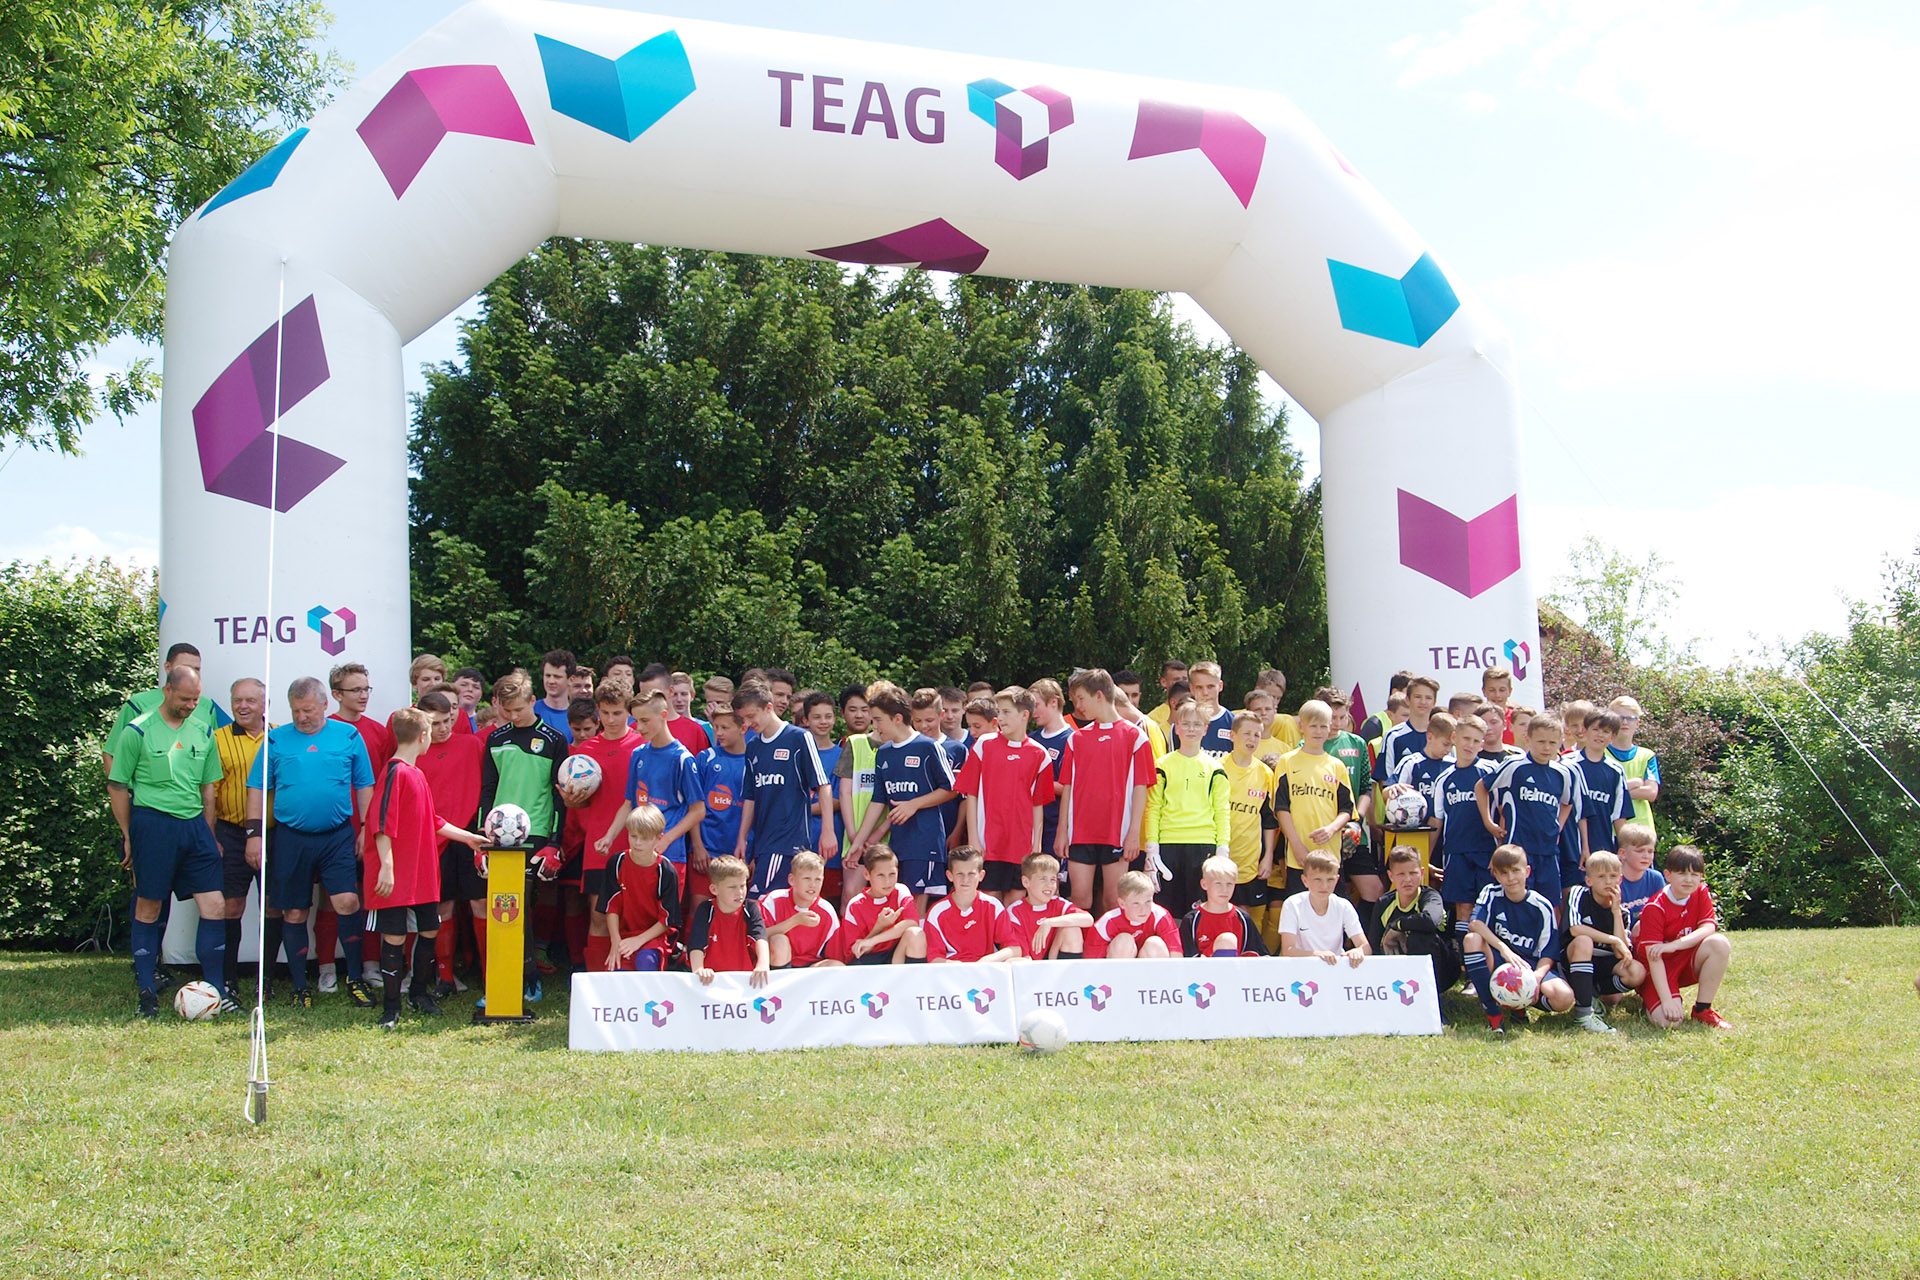 Kreisjugendspiele des Landkreises Greiz 2019: Weidaer und Zeulenrodaer Jungen siegten in Fußballturnieren